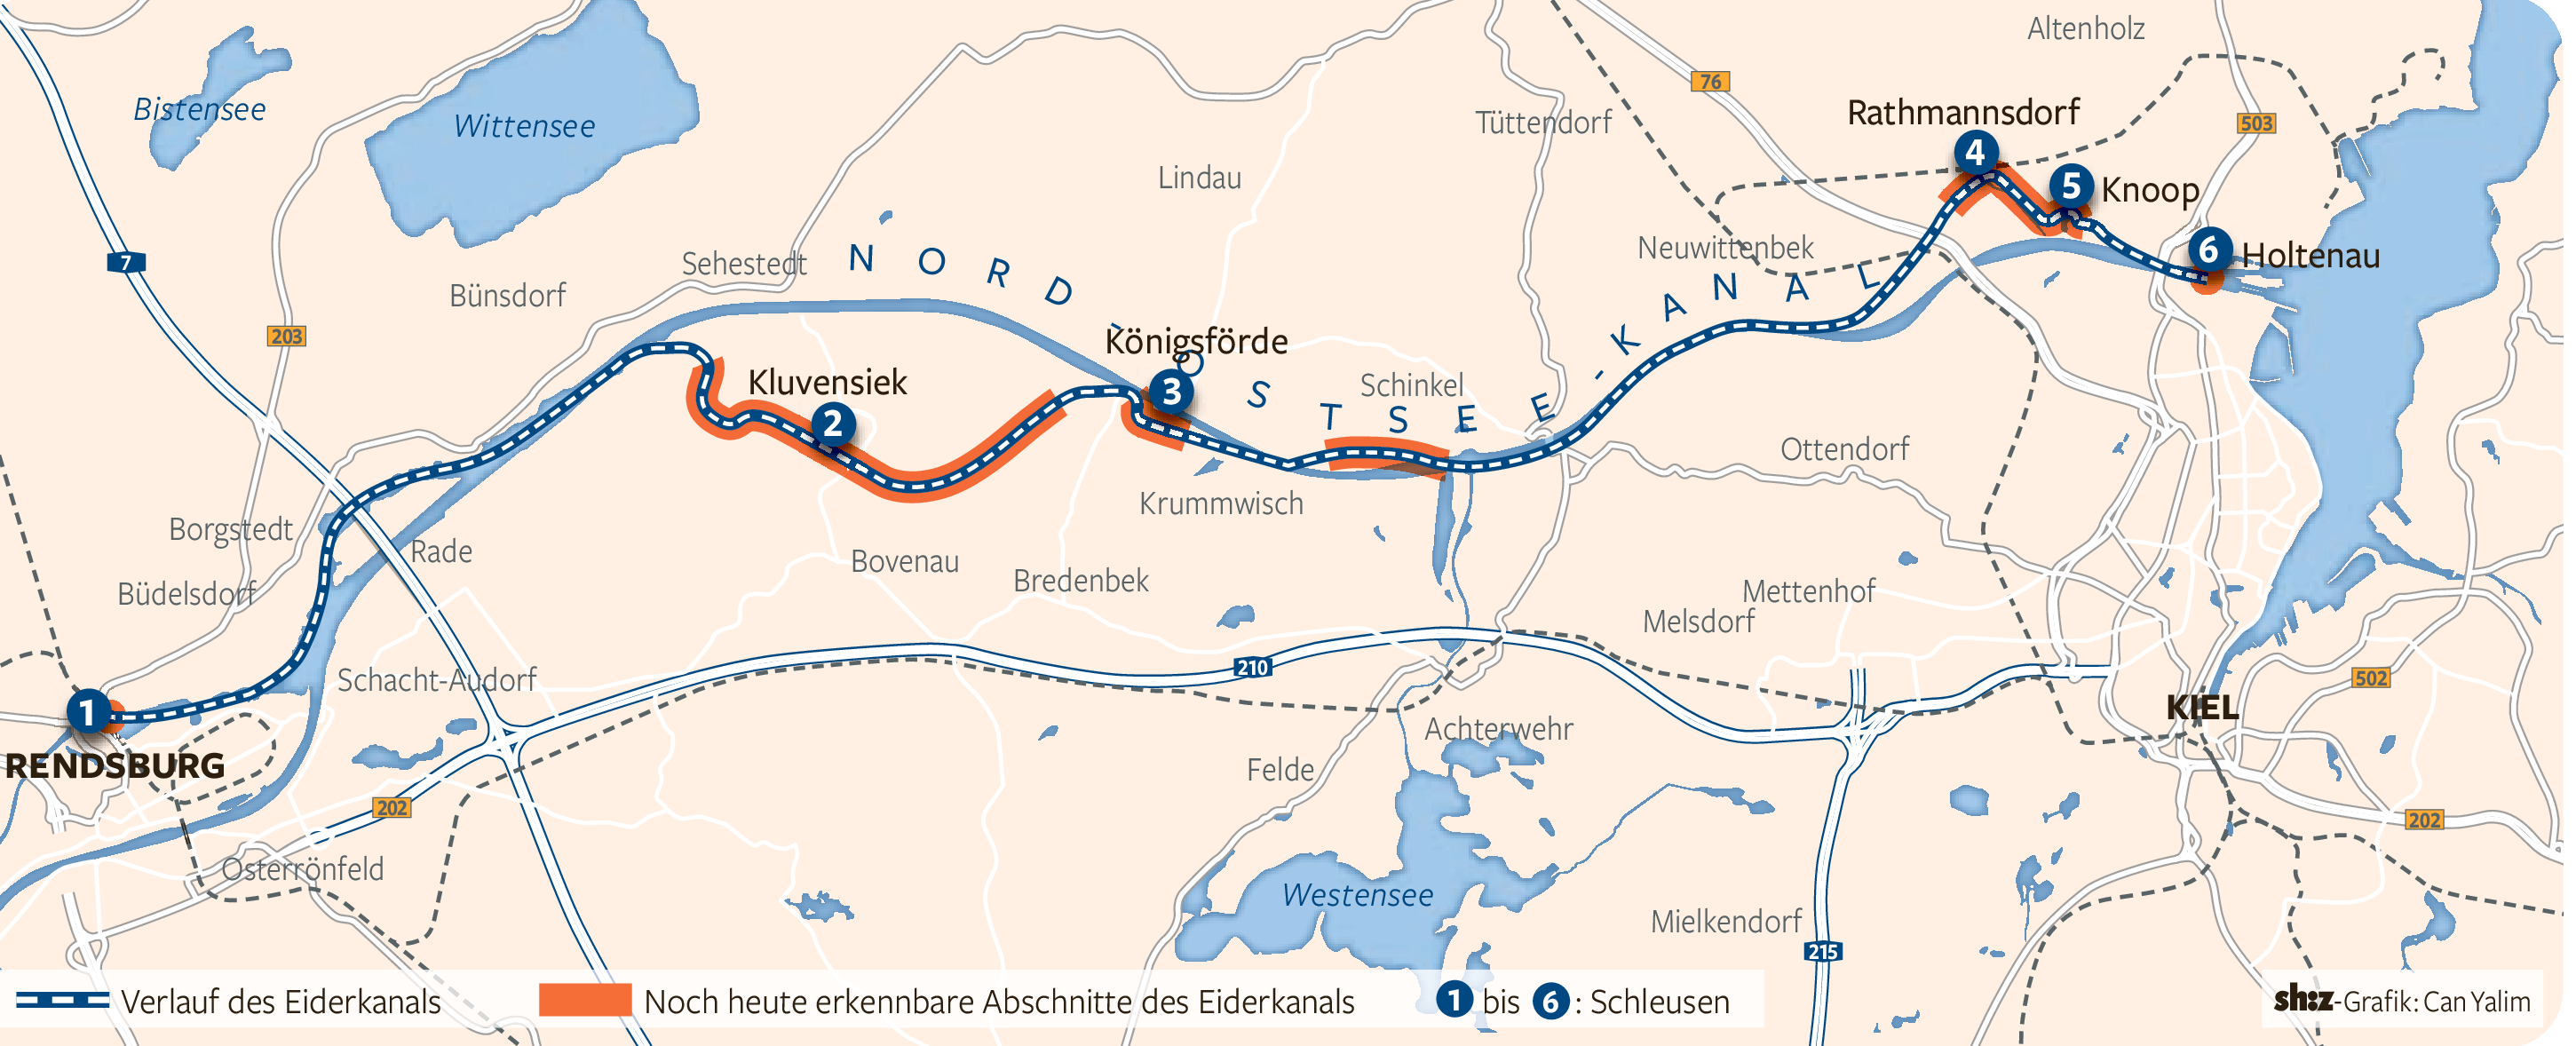 Um Zeit und Geld zu sparen, orientierte man sich beim Bau des Nord-Ostsee-Kanals an der Streckenführung des Eiderkanals.